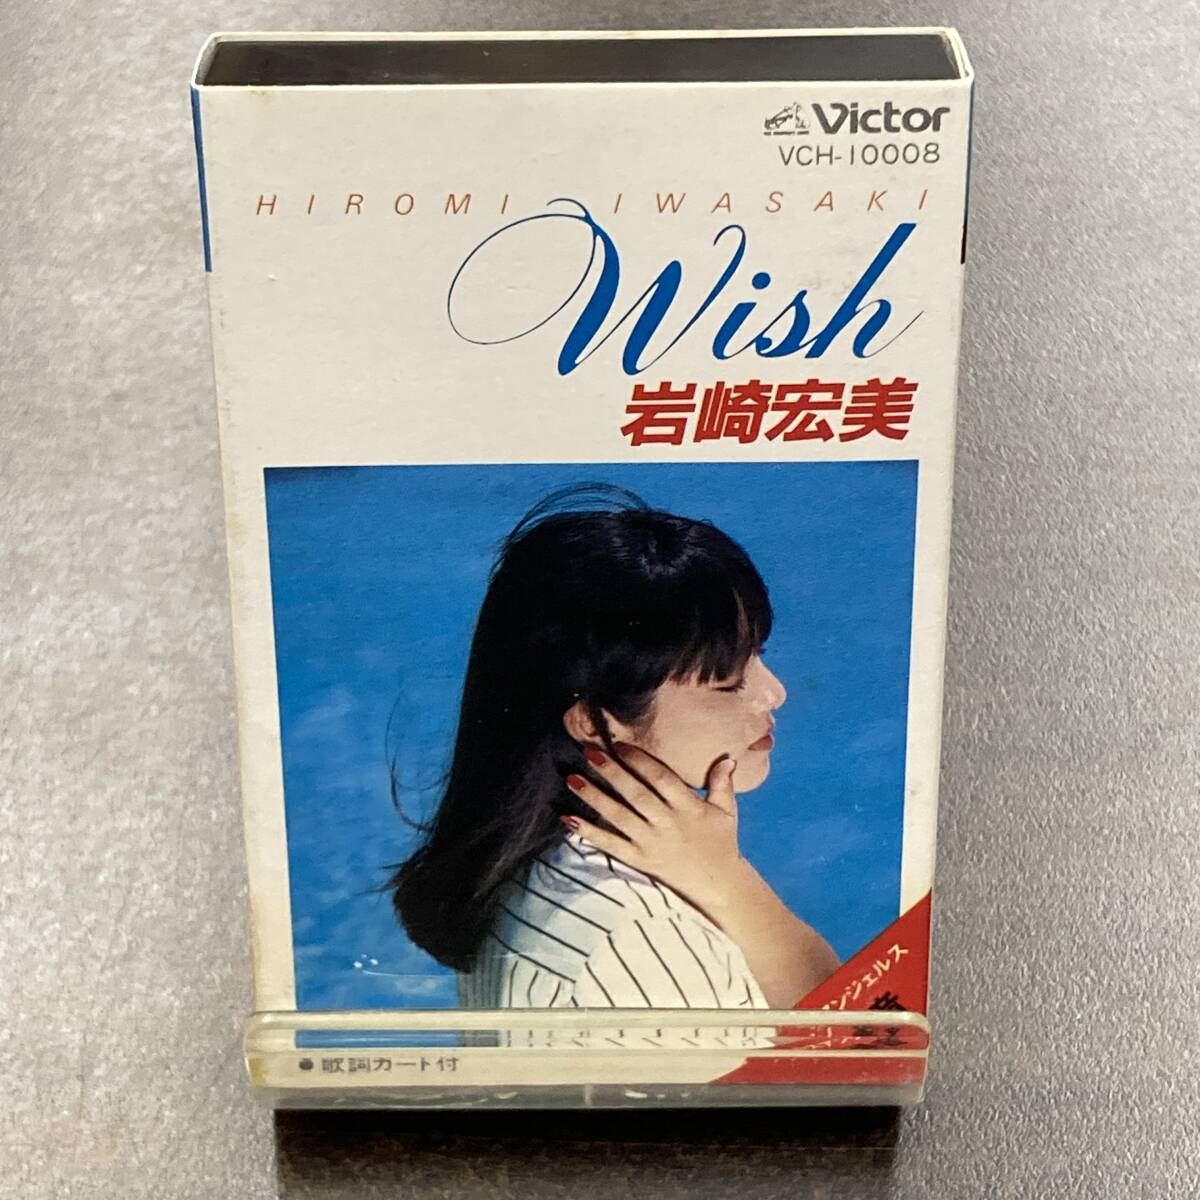 1074M 岩崎宏美 WISH カセットテープ / Hiromi Iwasaki Idol Cassette Tapeの画像1